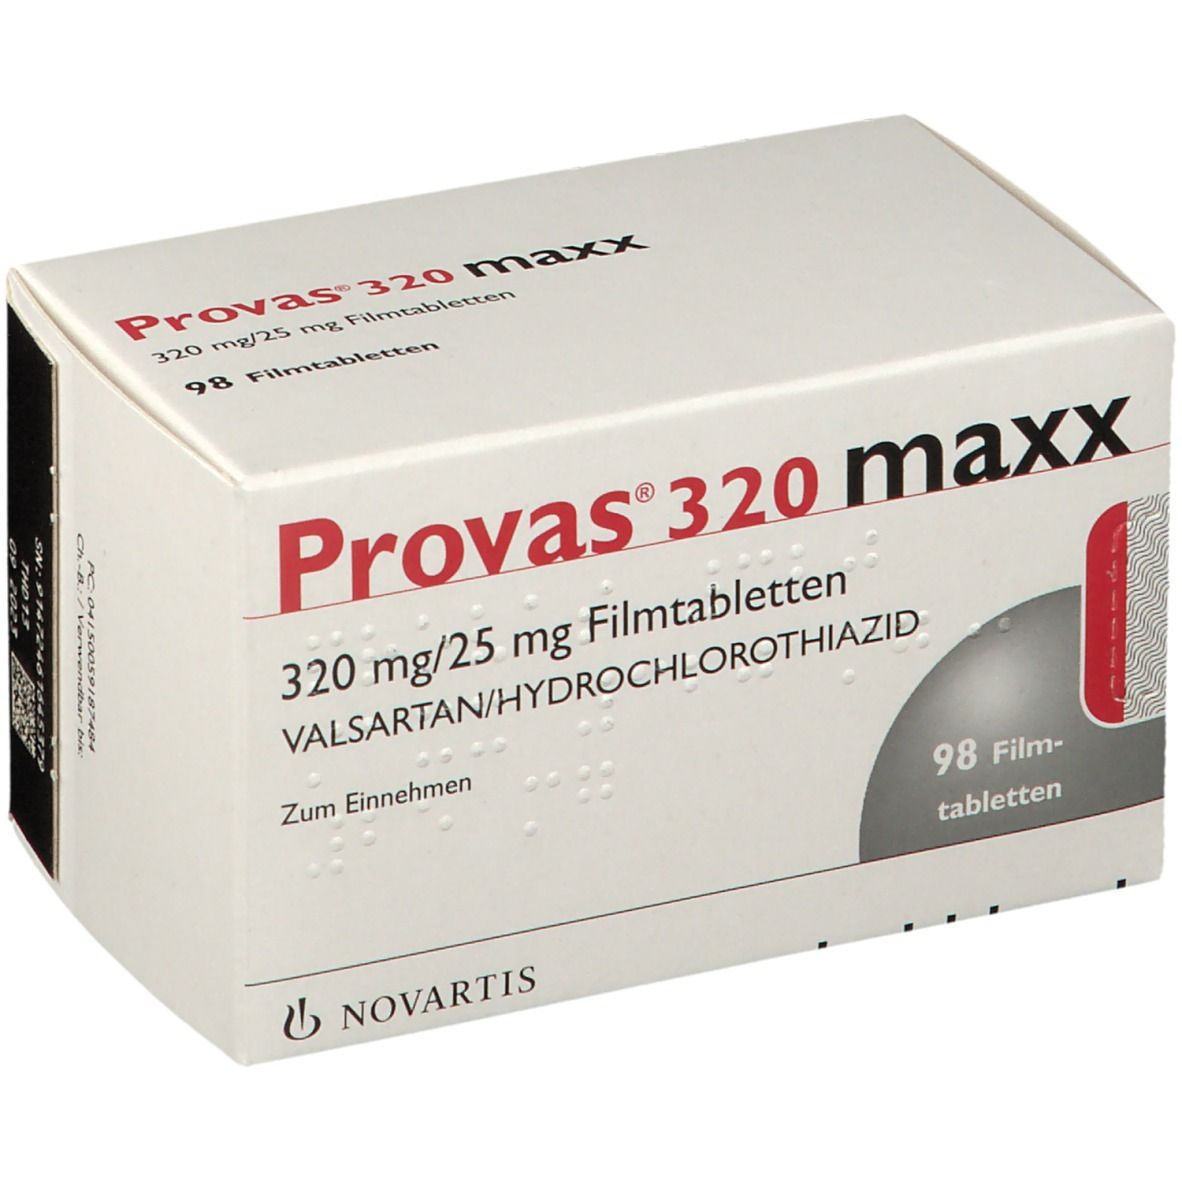 Provas® 320 maxx 320 mg/25 mg